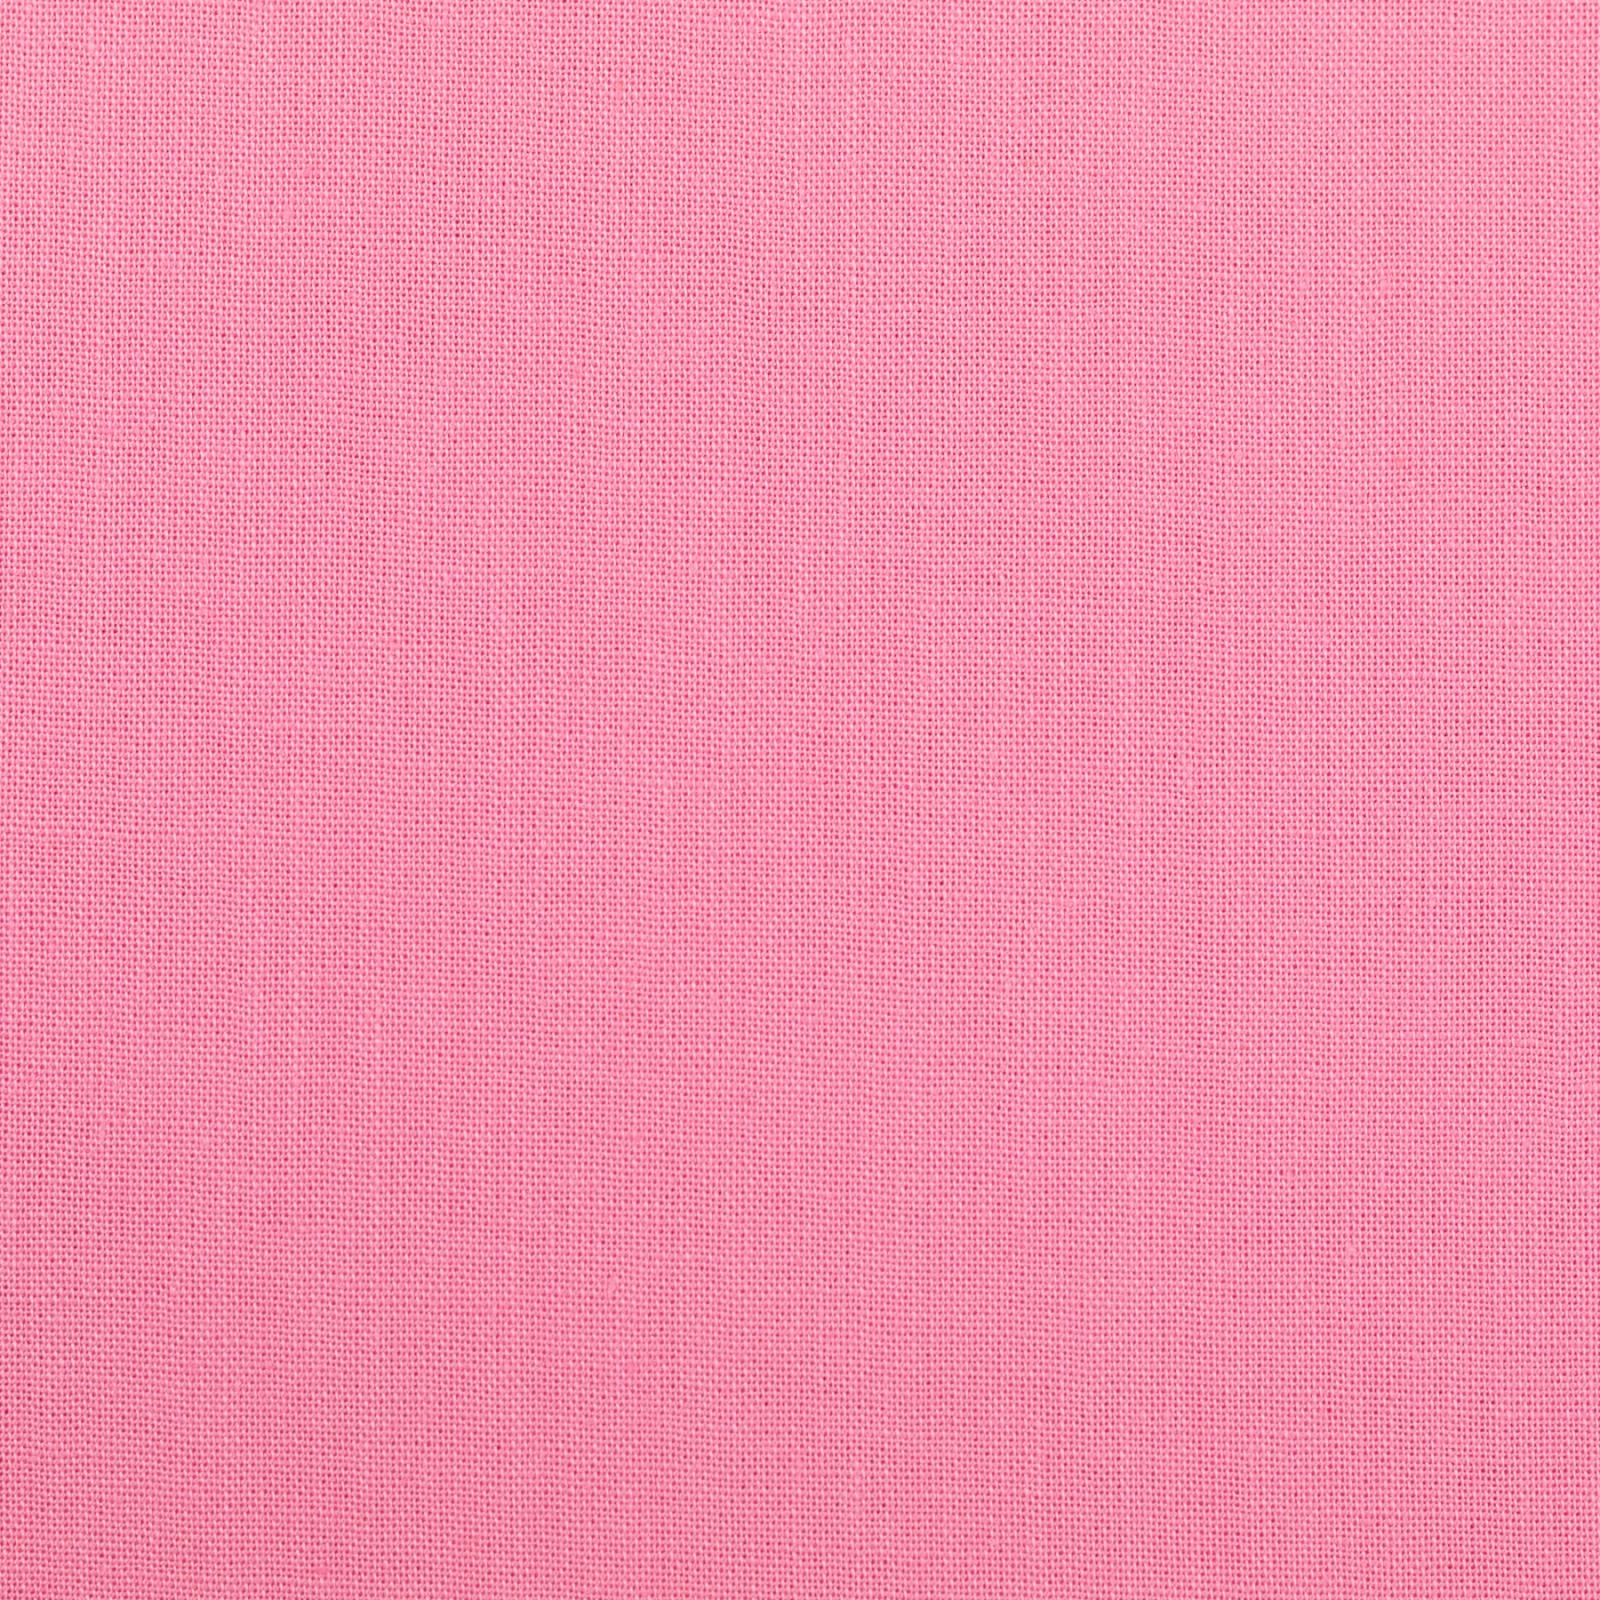 Baumwollwebware Heide in rosa | 8,00 EUR/m